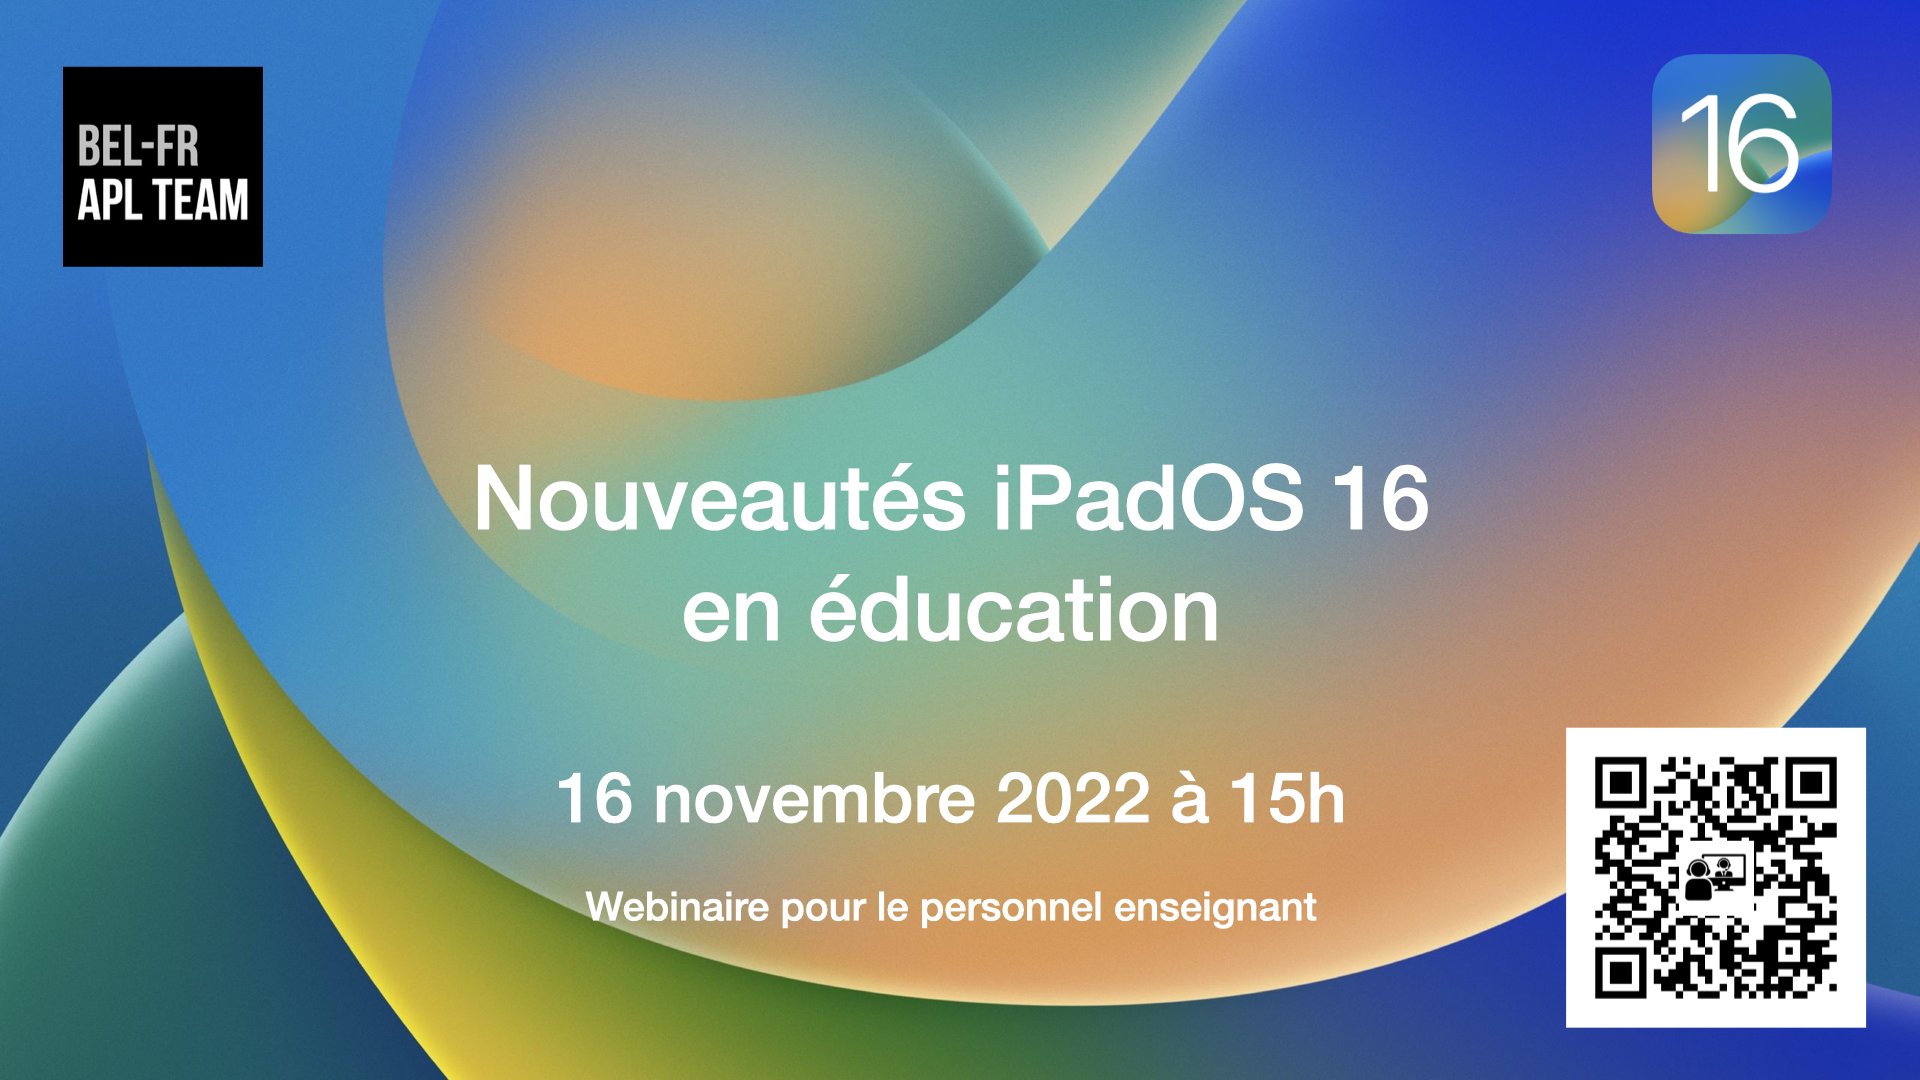 Webinaire 16 novembre 2022 - Nouveautés iPadOS 16 en éducation